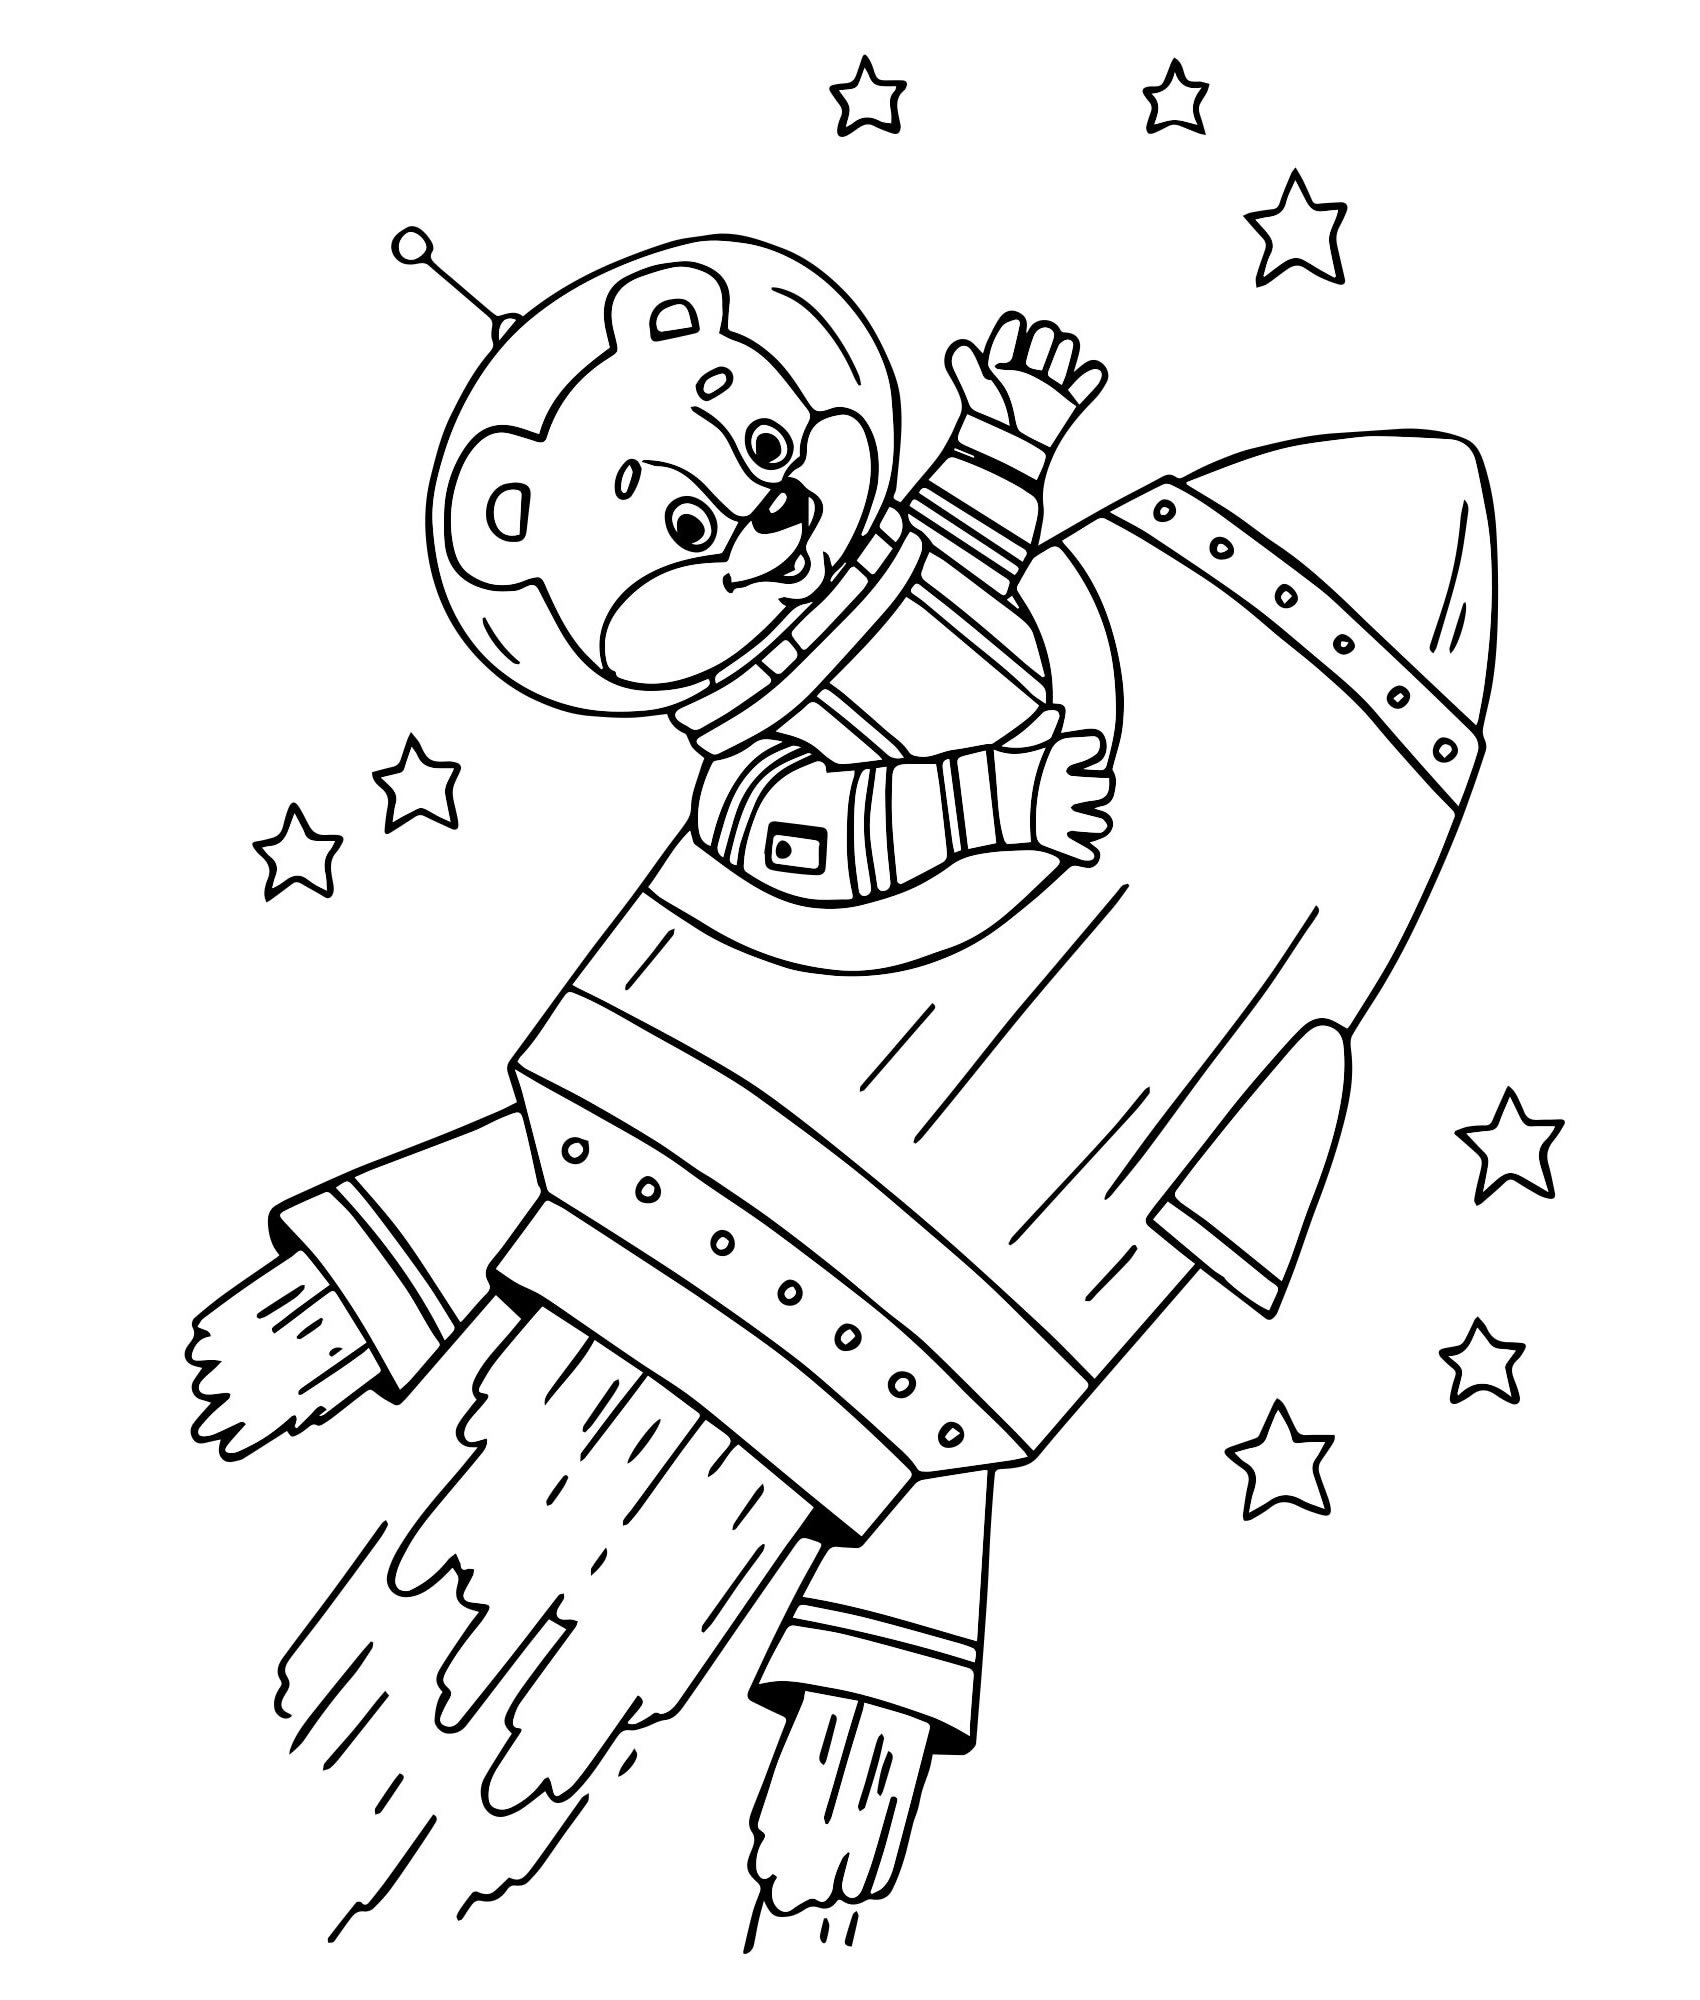 Раскраски 12 апреля день космонавтики для детей. Раскраска. В космосе. Космонавт раскраска для детей. Раскраски ко Дню космонавтики. Космос раскраска для детей.